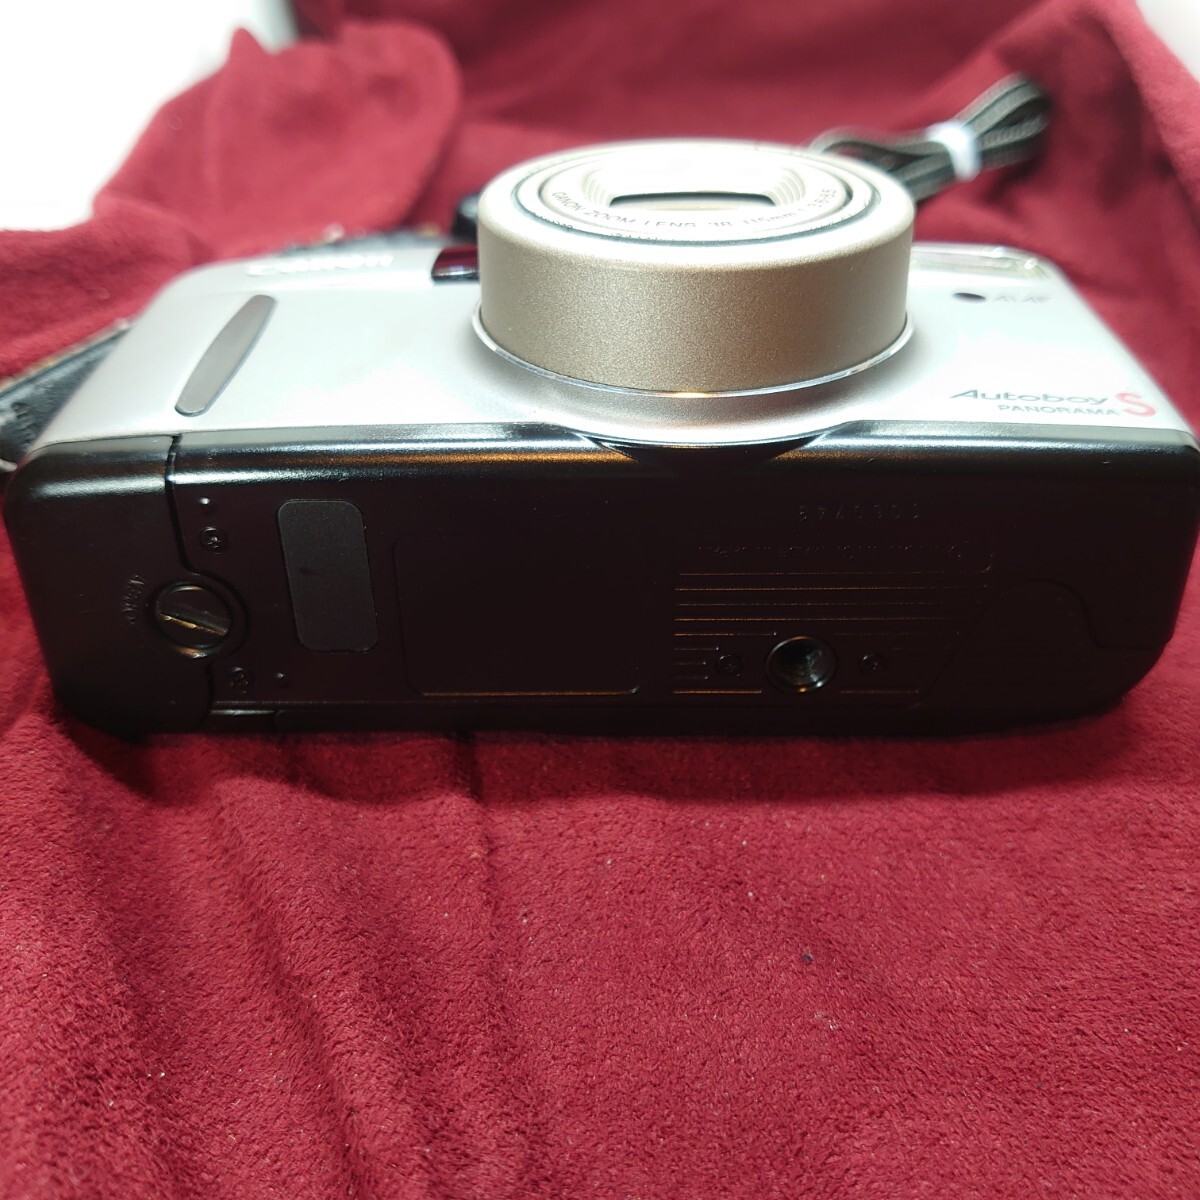 346【フラッシュ/シャッターOK】CANON Autoboy S コンパクトフィルムカメラ キヤノン オートボーイ LENS F:3.6-8.5 38-115mmの画像7